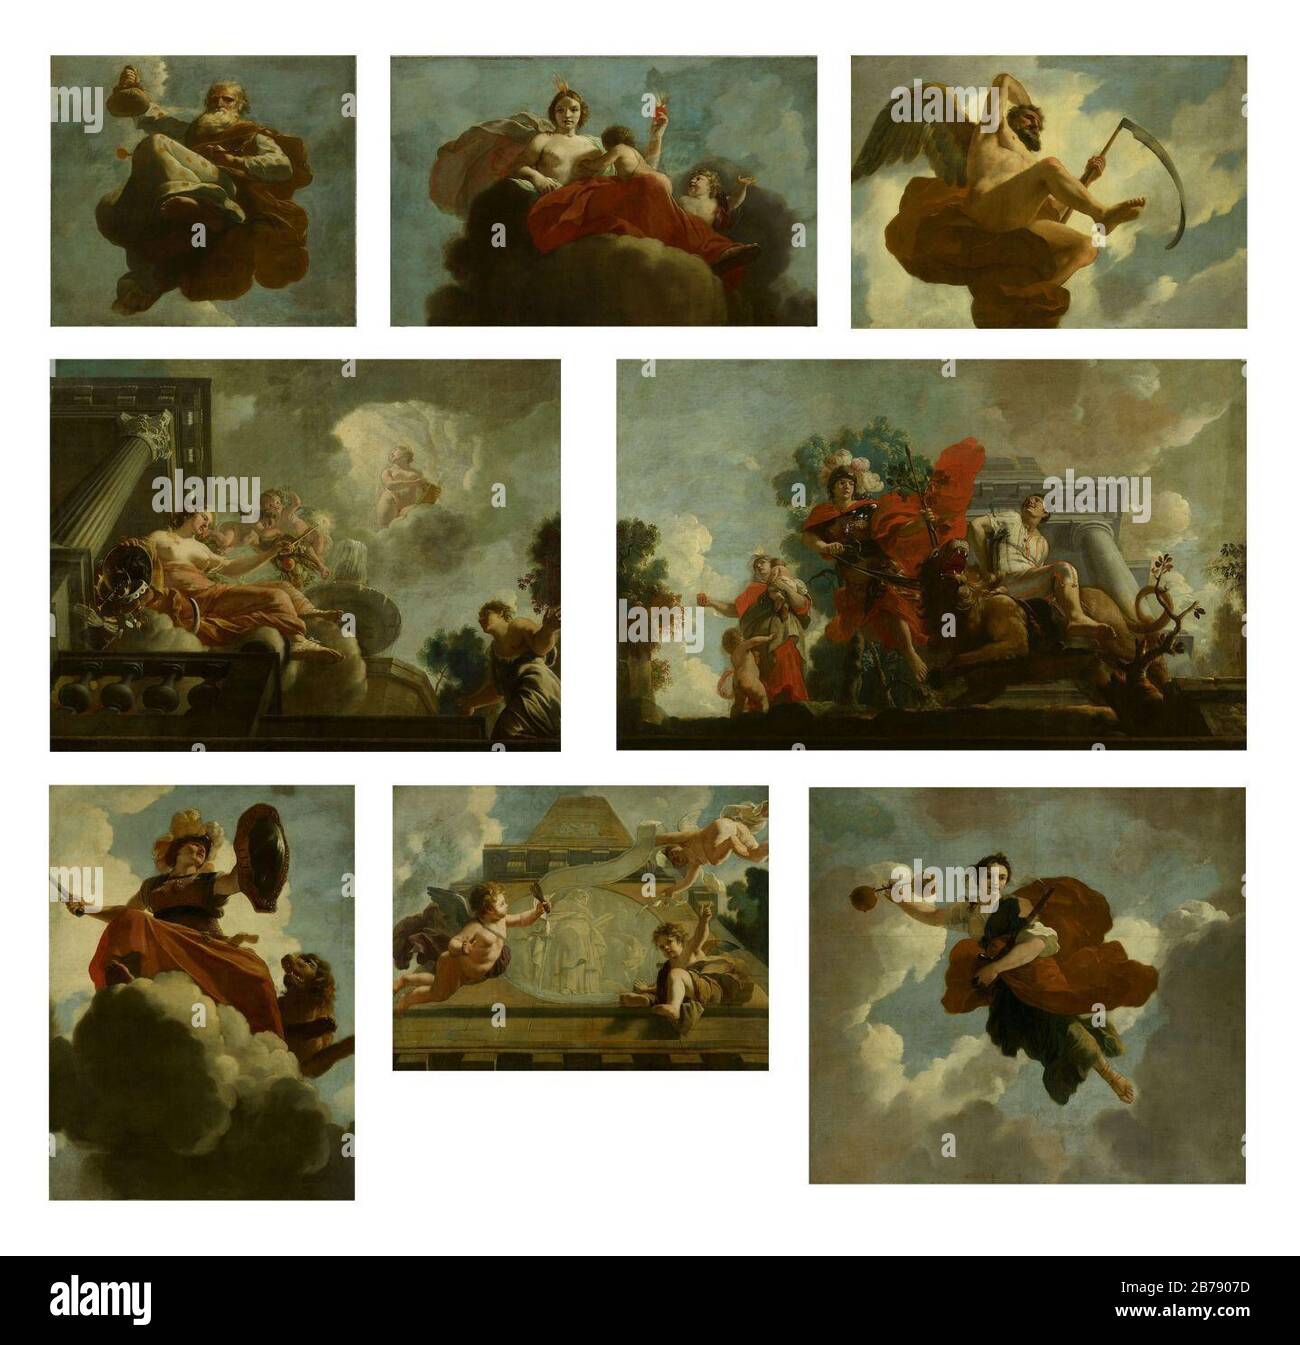 Gerard de Lairesse - Acht allegorische voorstellingen afkomstig van het plafond in het Leprozenhuis Stock Photo